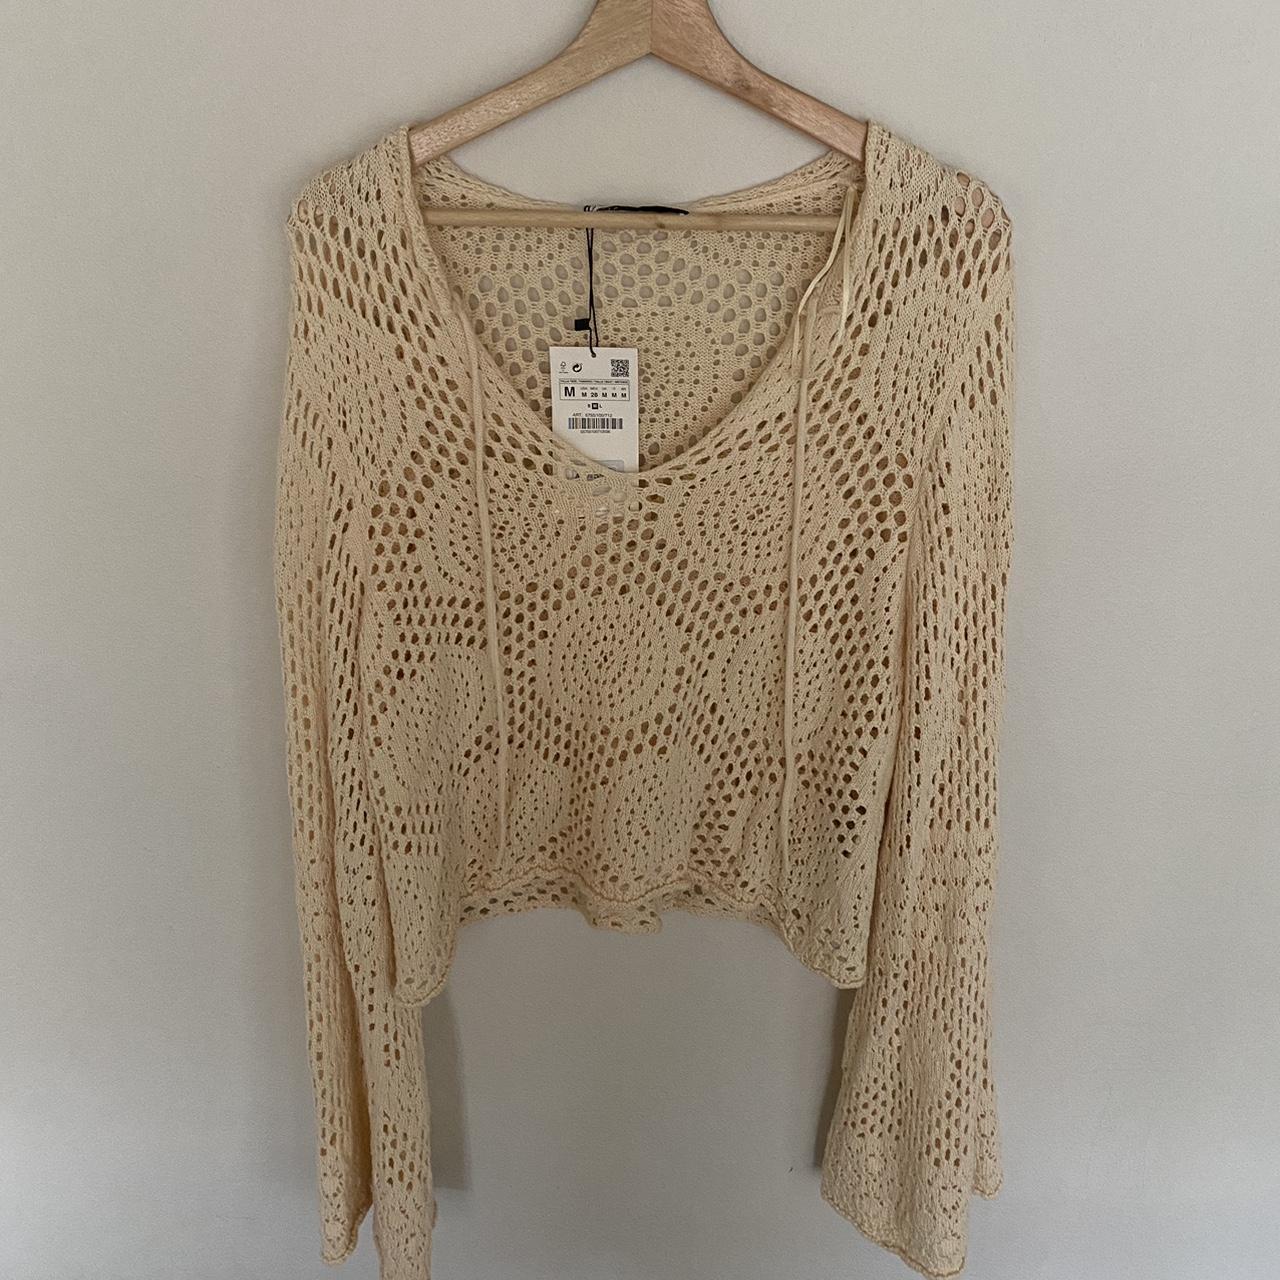 Zara crochet top. Never worn, tags still on. - Depop